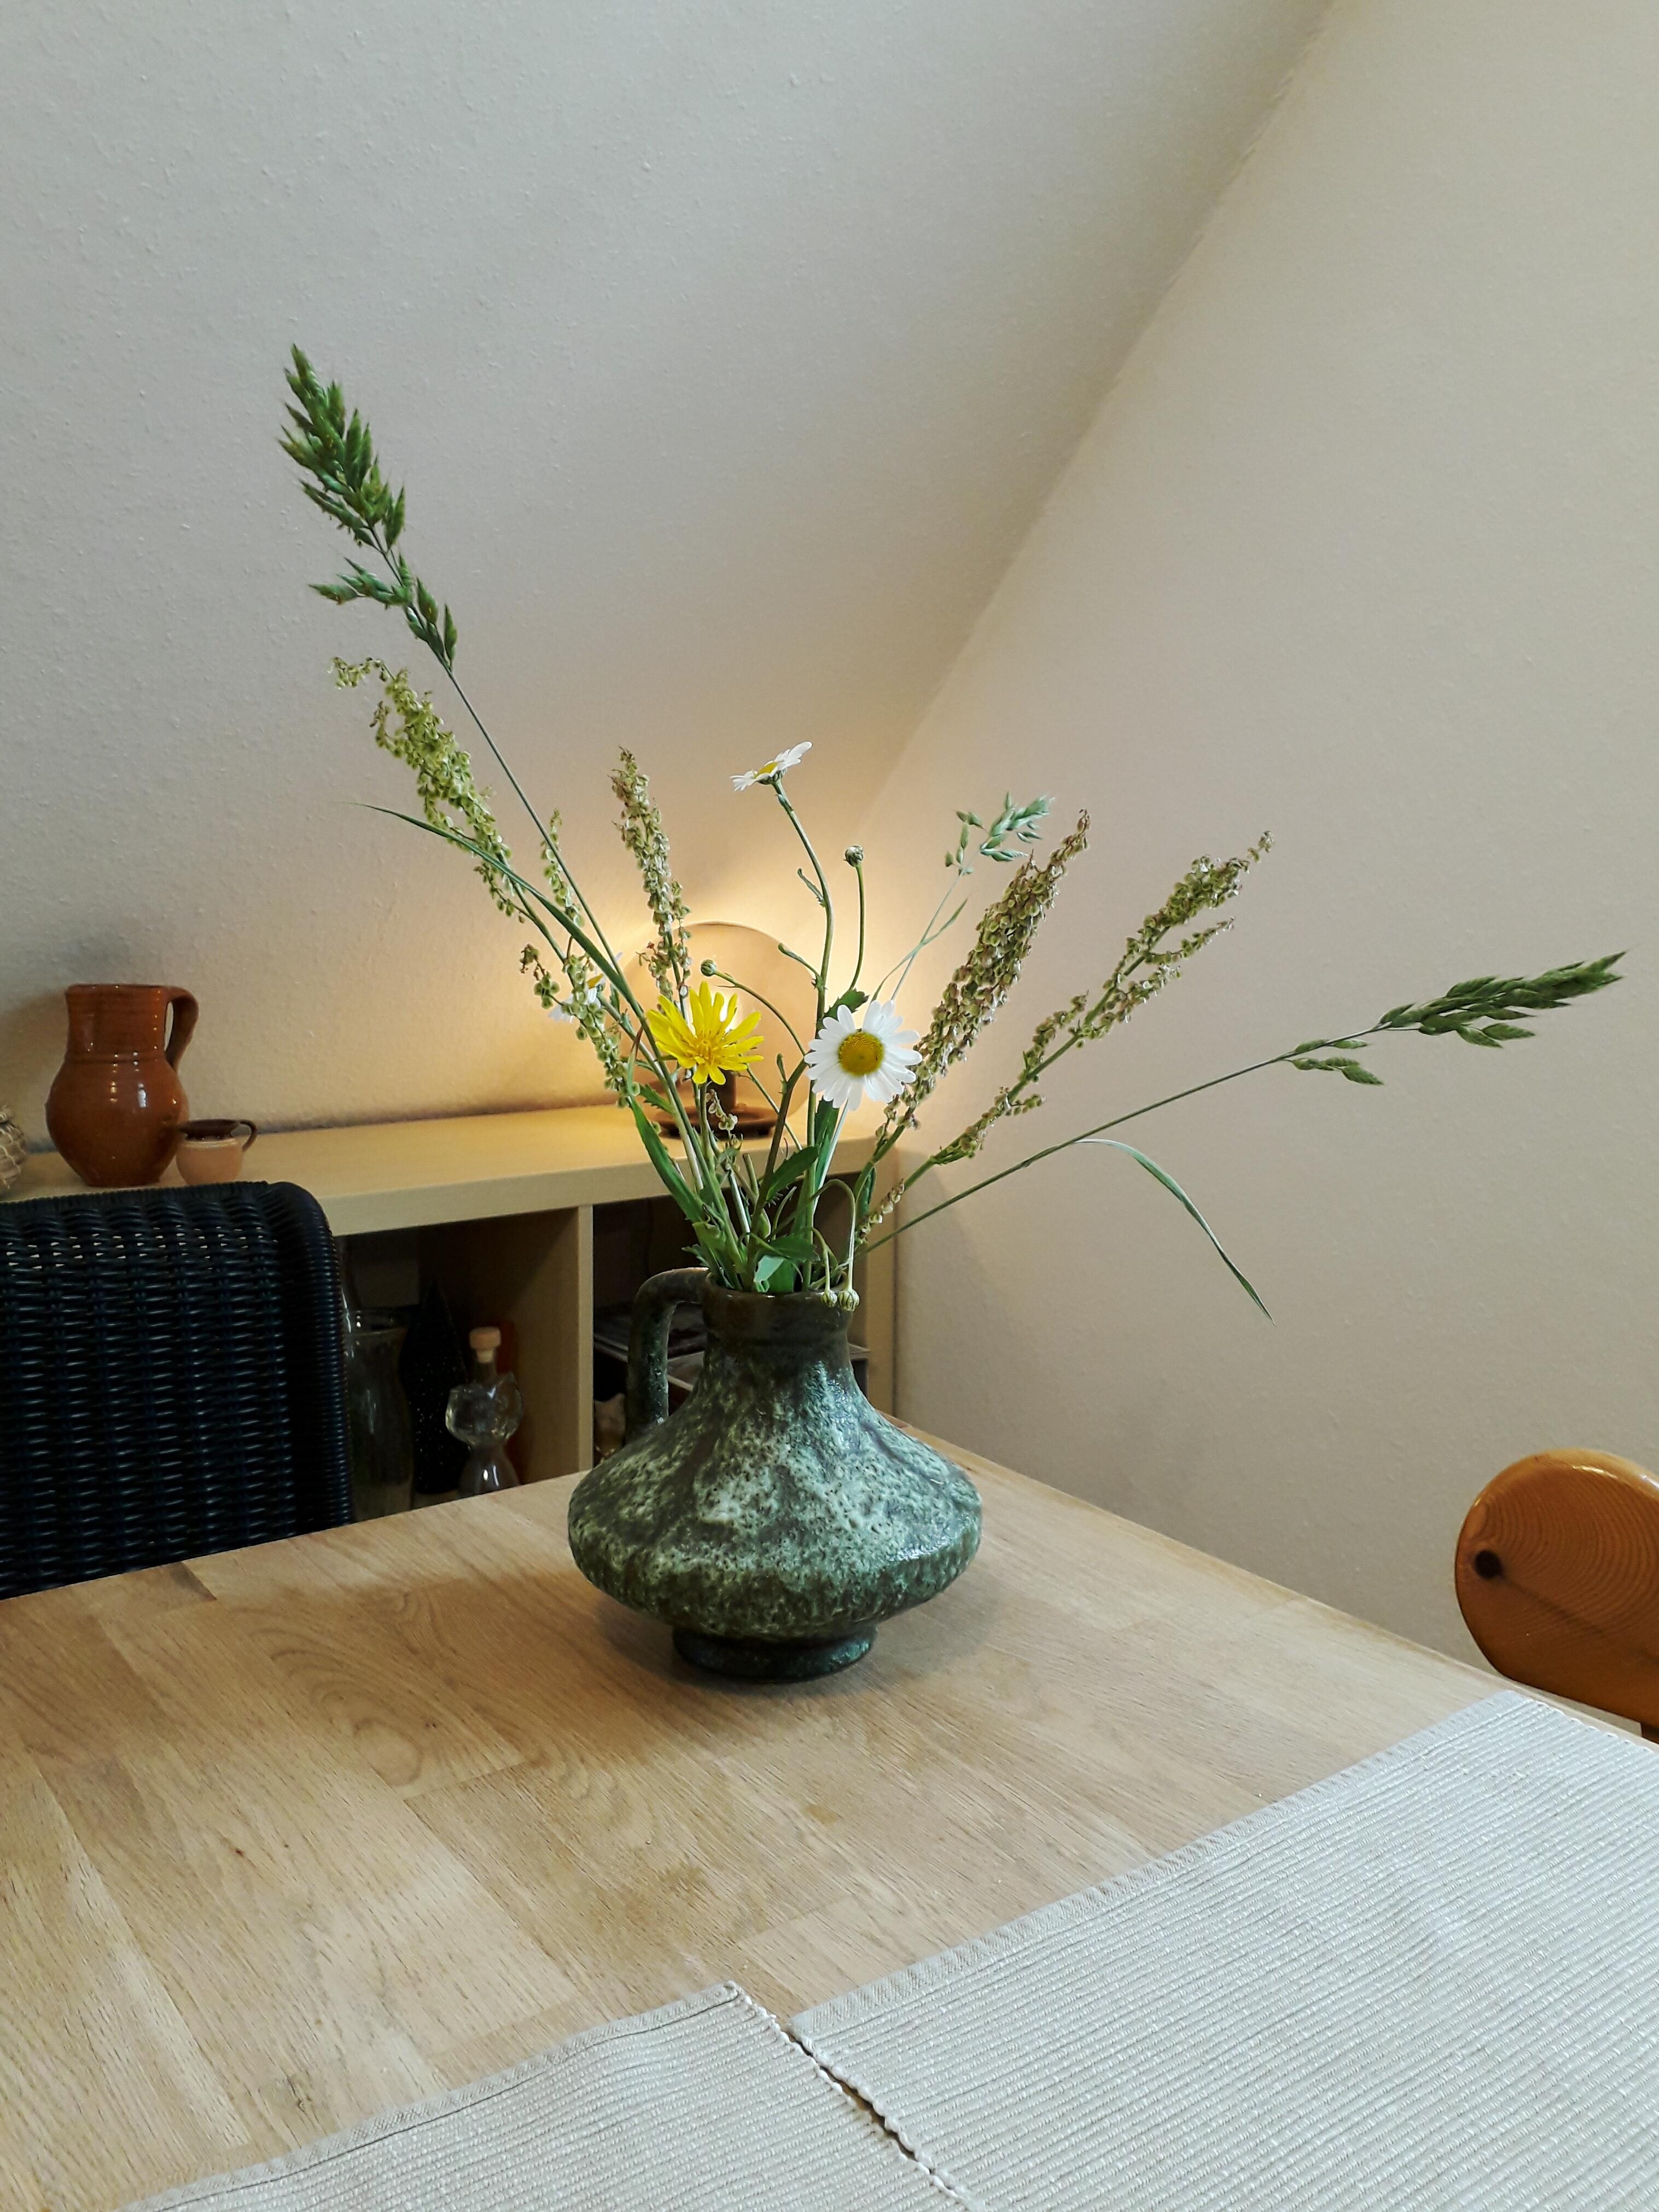 Wild Wild Wiesenblumenstrauss 😁
#Blumen #Gräser #Vase #Keramikvase #Esstisch #Licht
#blumendeko